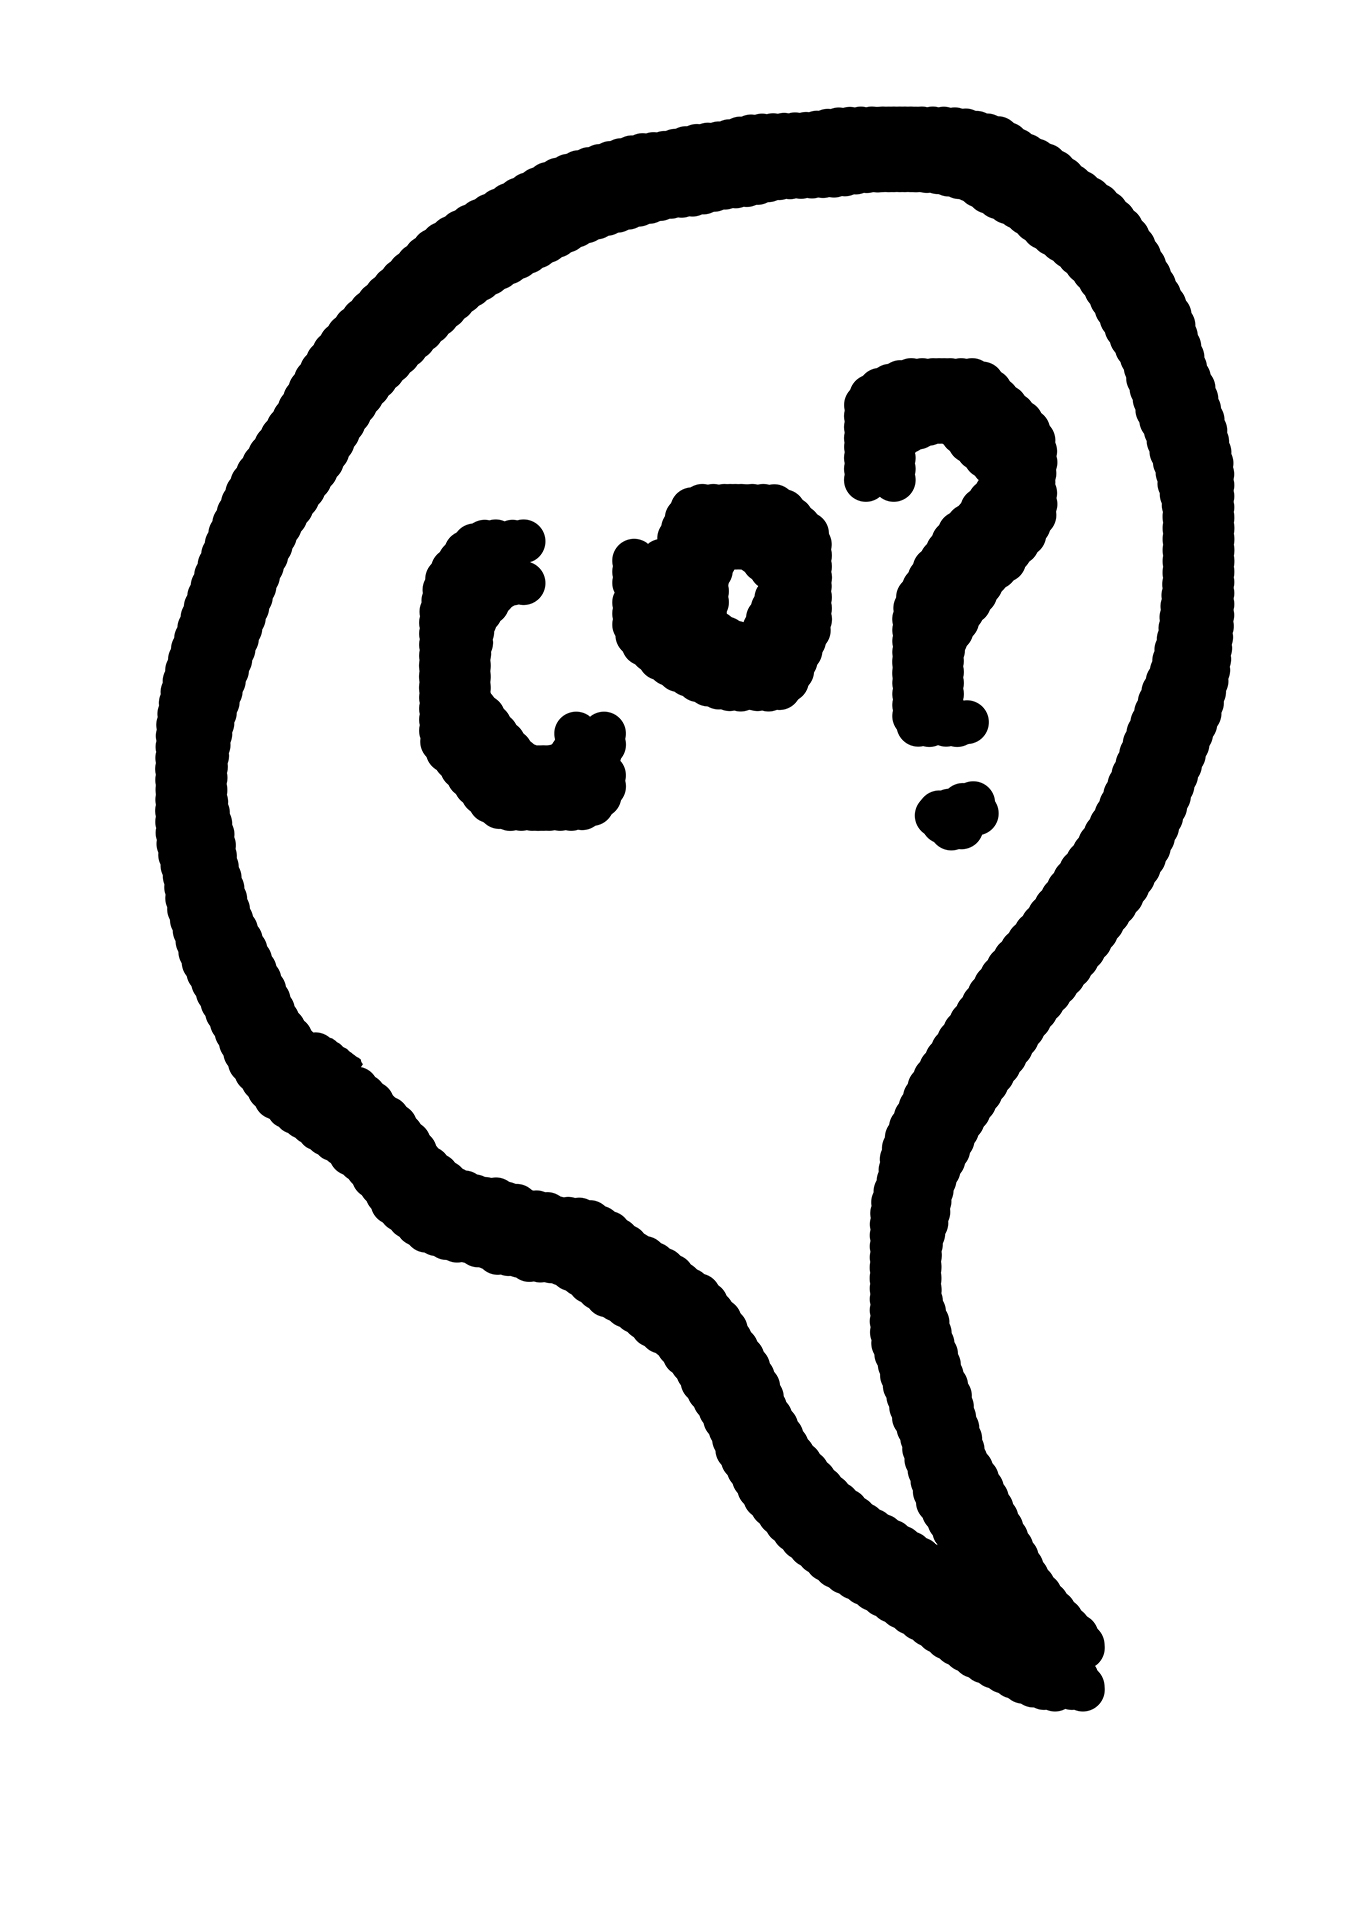 Grafika cyfrowa, dymek konwersacyjny z napisem "Co?".